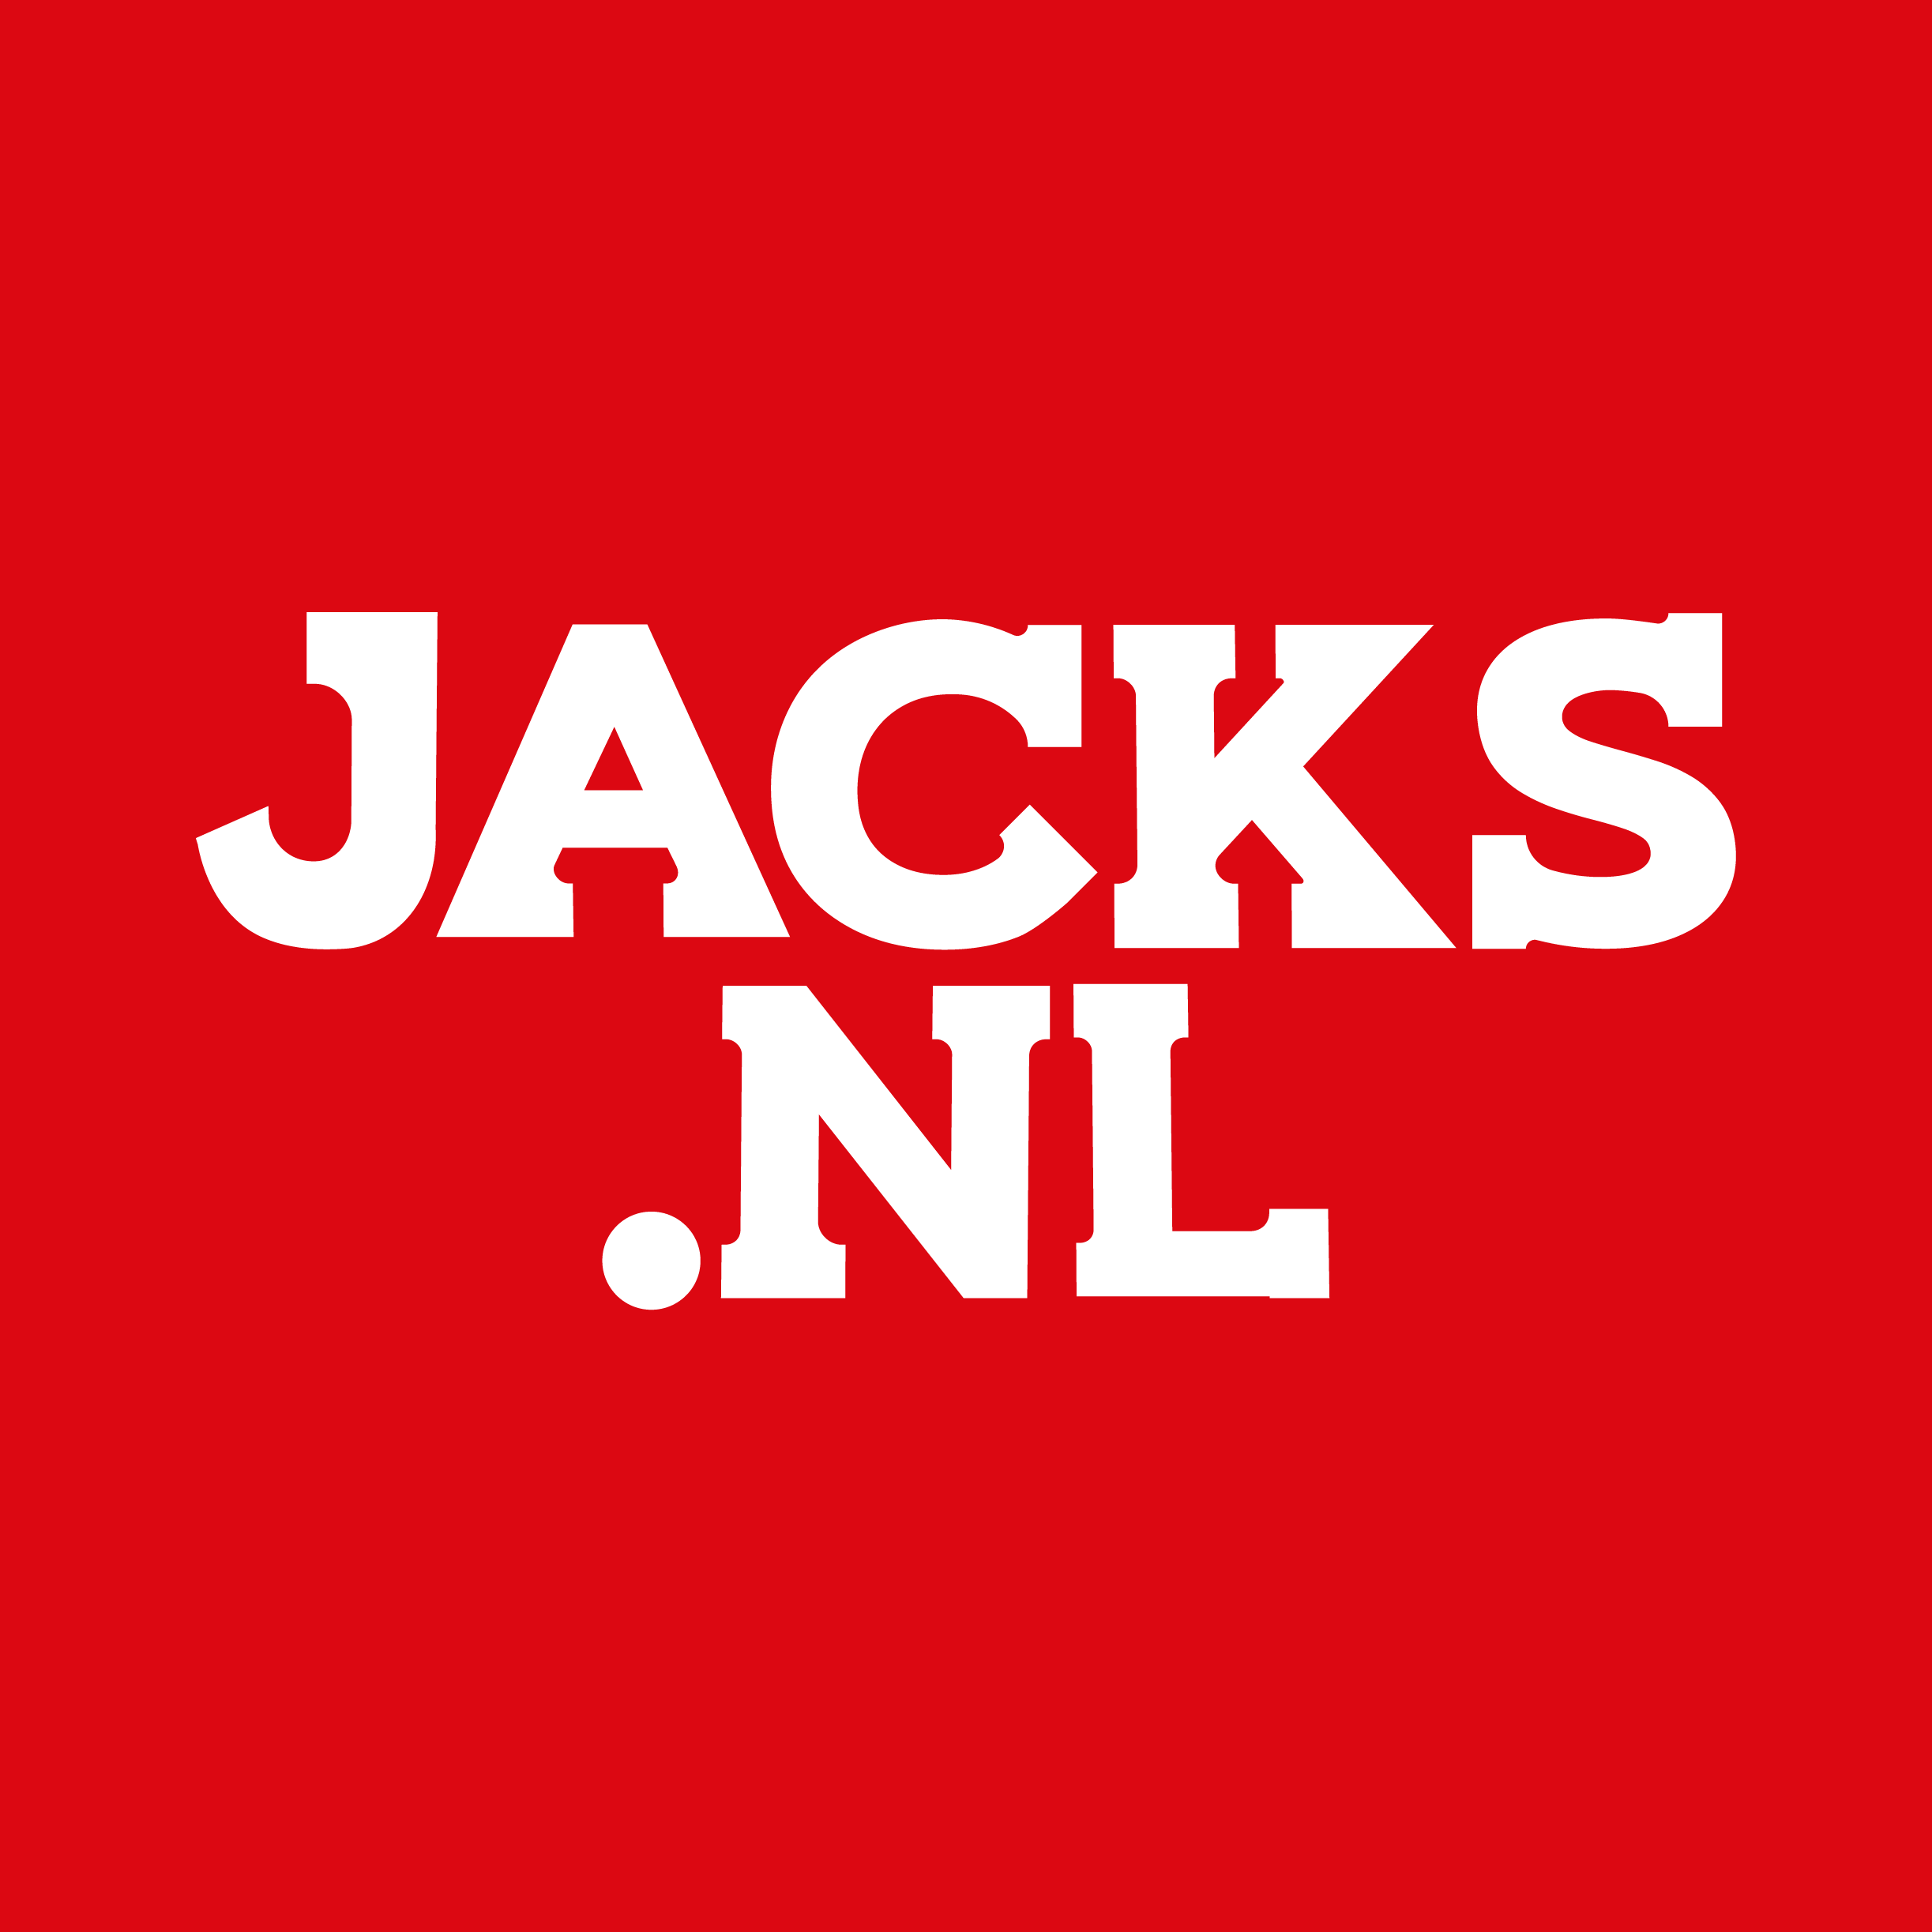 Jacks casino review